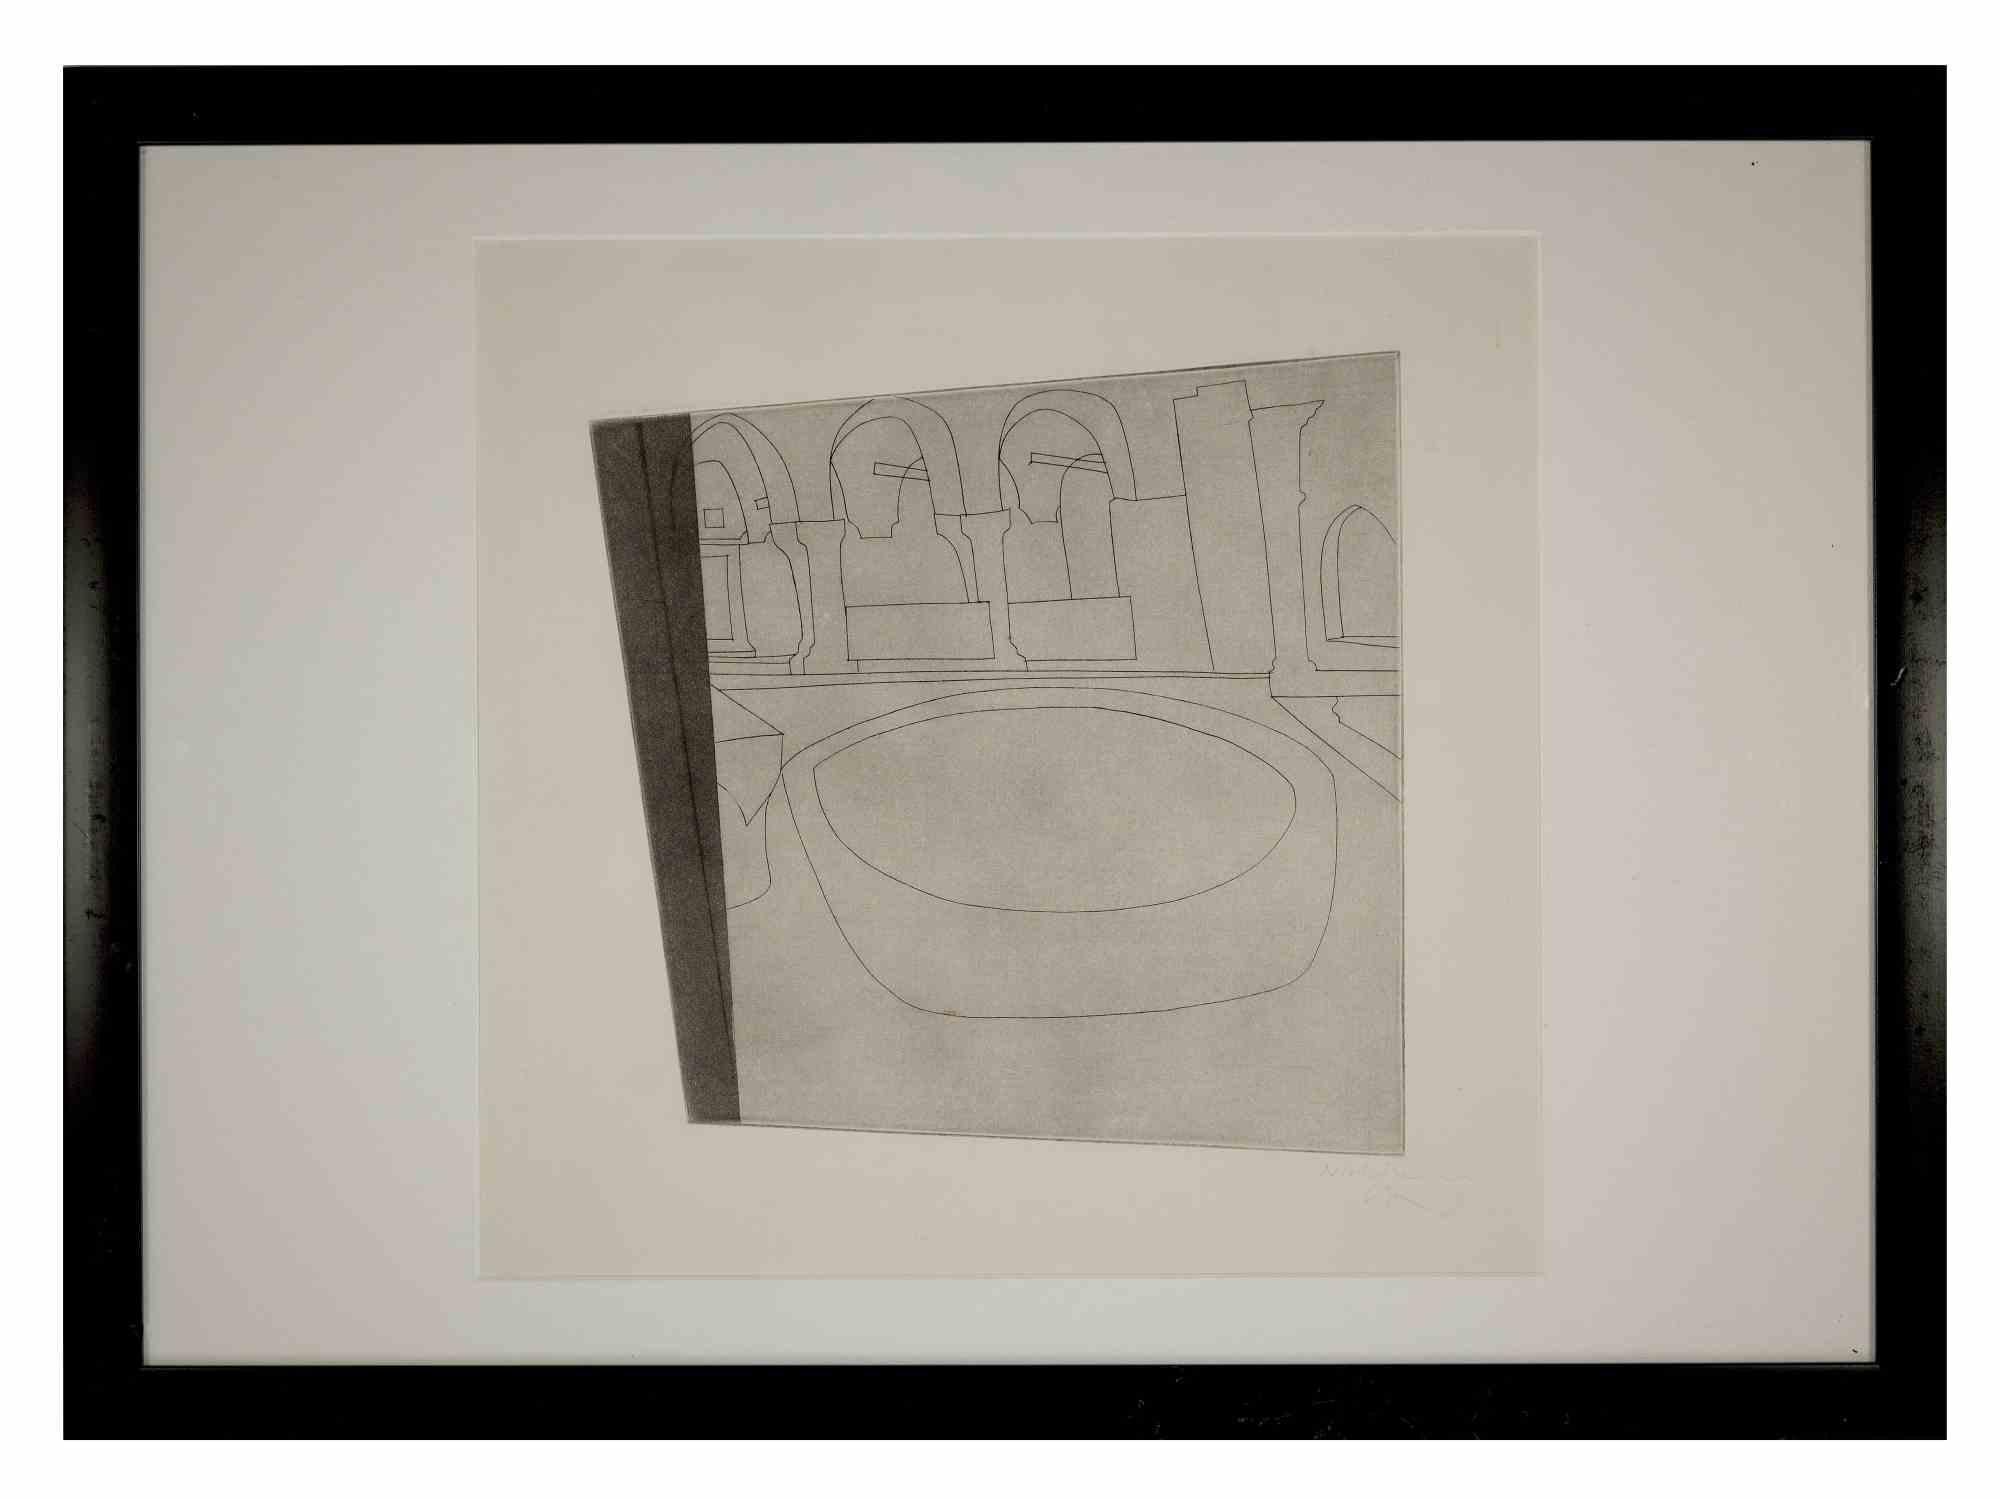 Torcello II est une œuvre d'art originale réalisée par Ben Nicholson en 1967. 

Signé à la main et daté dans la marge inférieure droite. Non numéroté.

Gravure en noir et blanc.

Cadre inclus : 54,5 x 2 x 74 cm

En 1967, Ben Nicholson a visité la